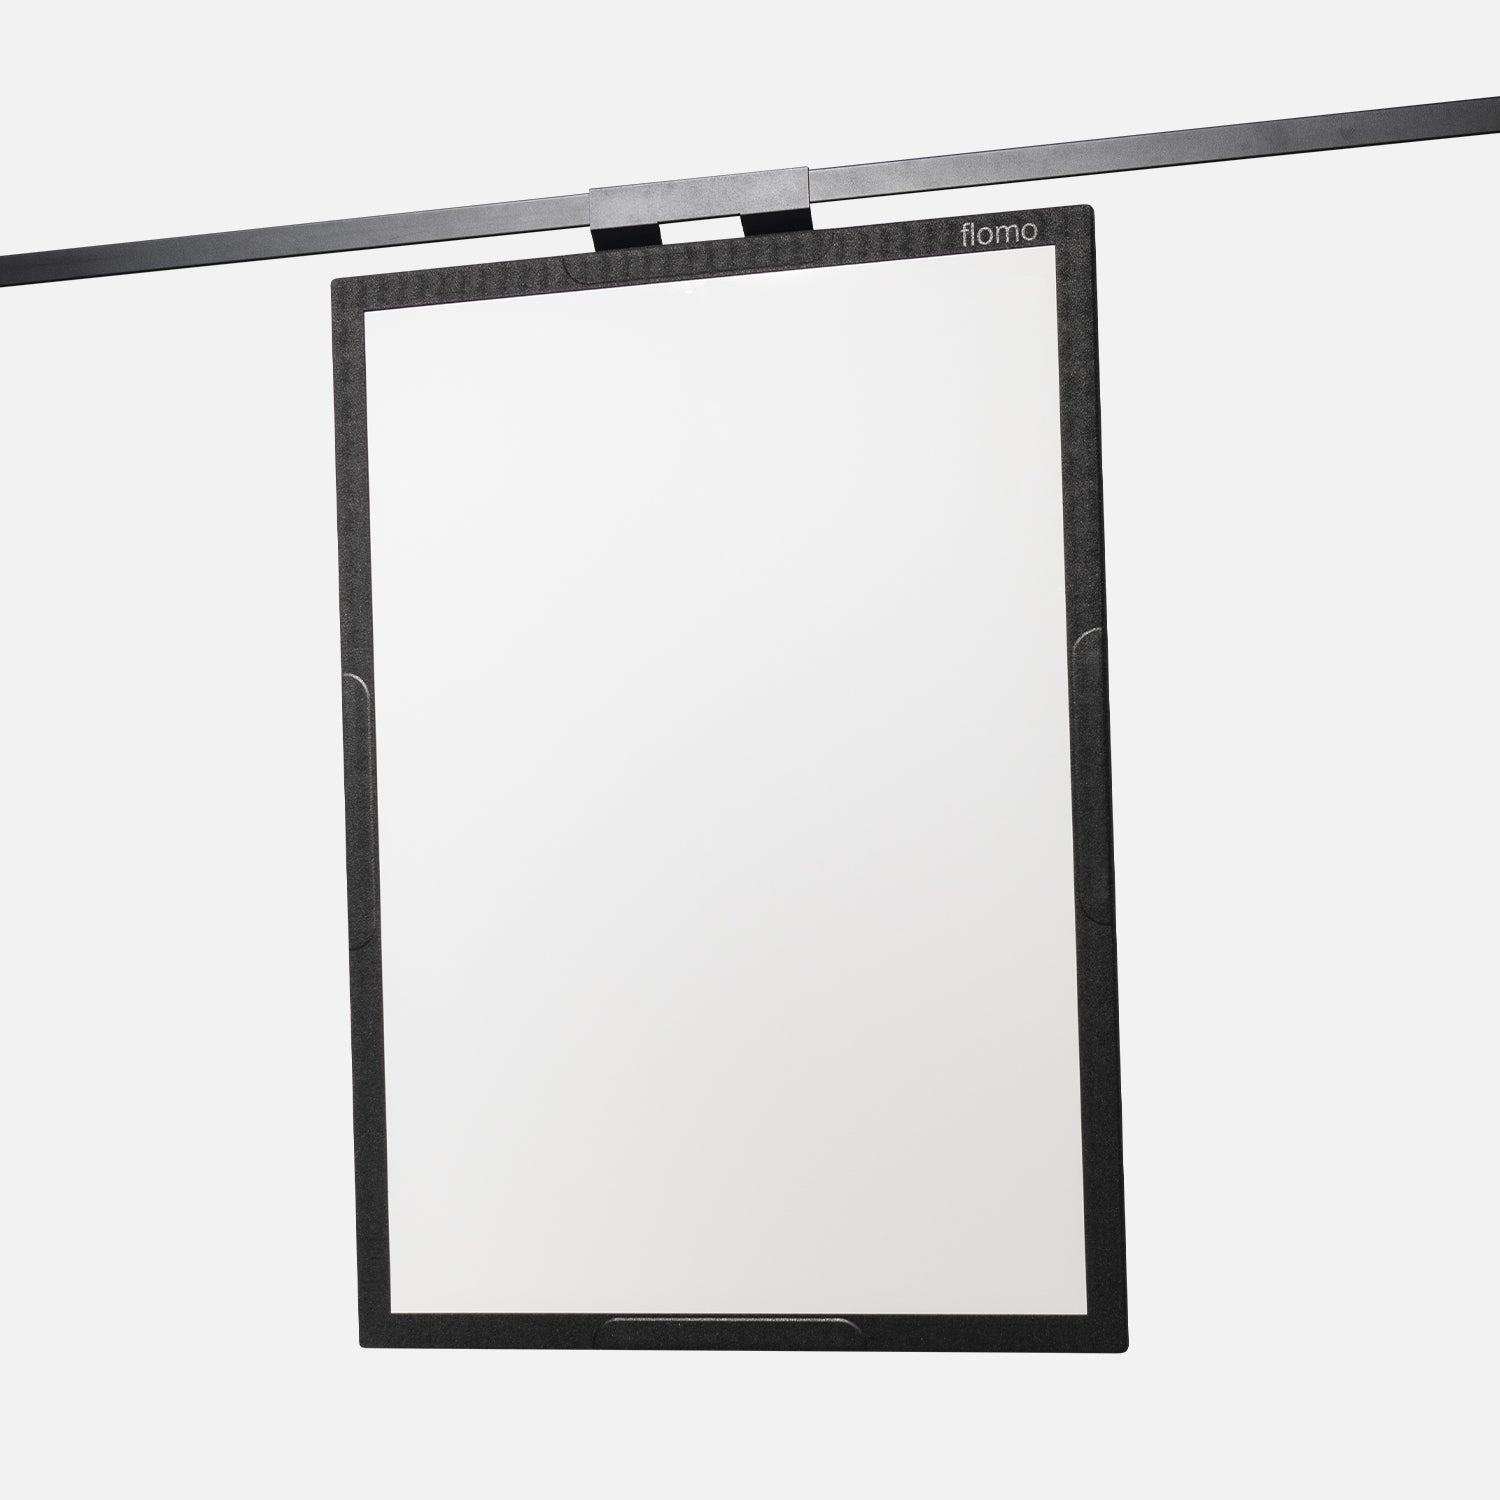 flomo board - flexible whiteboard